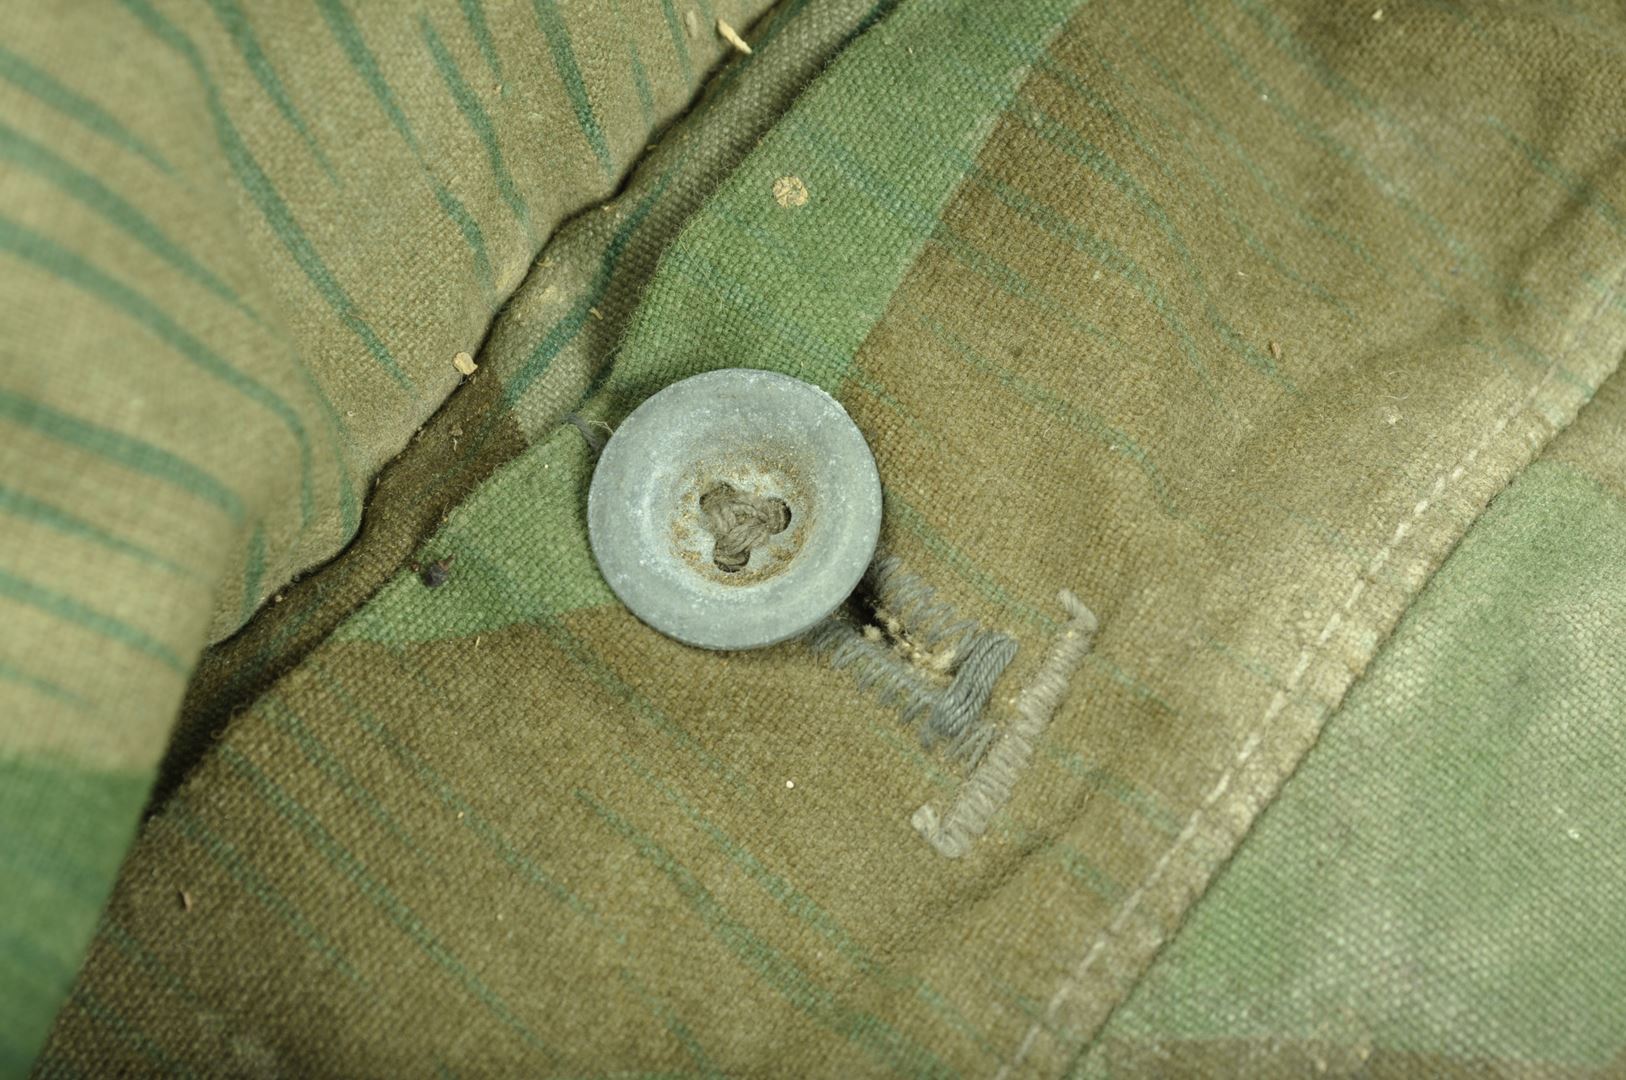 Zeltbahn / Poncho WH camouflé daté 1944